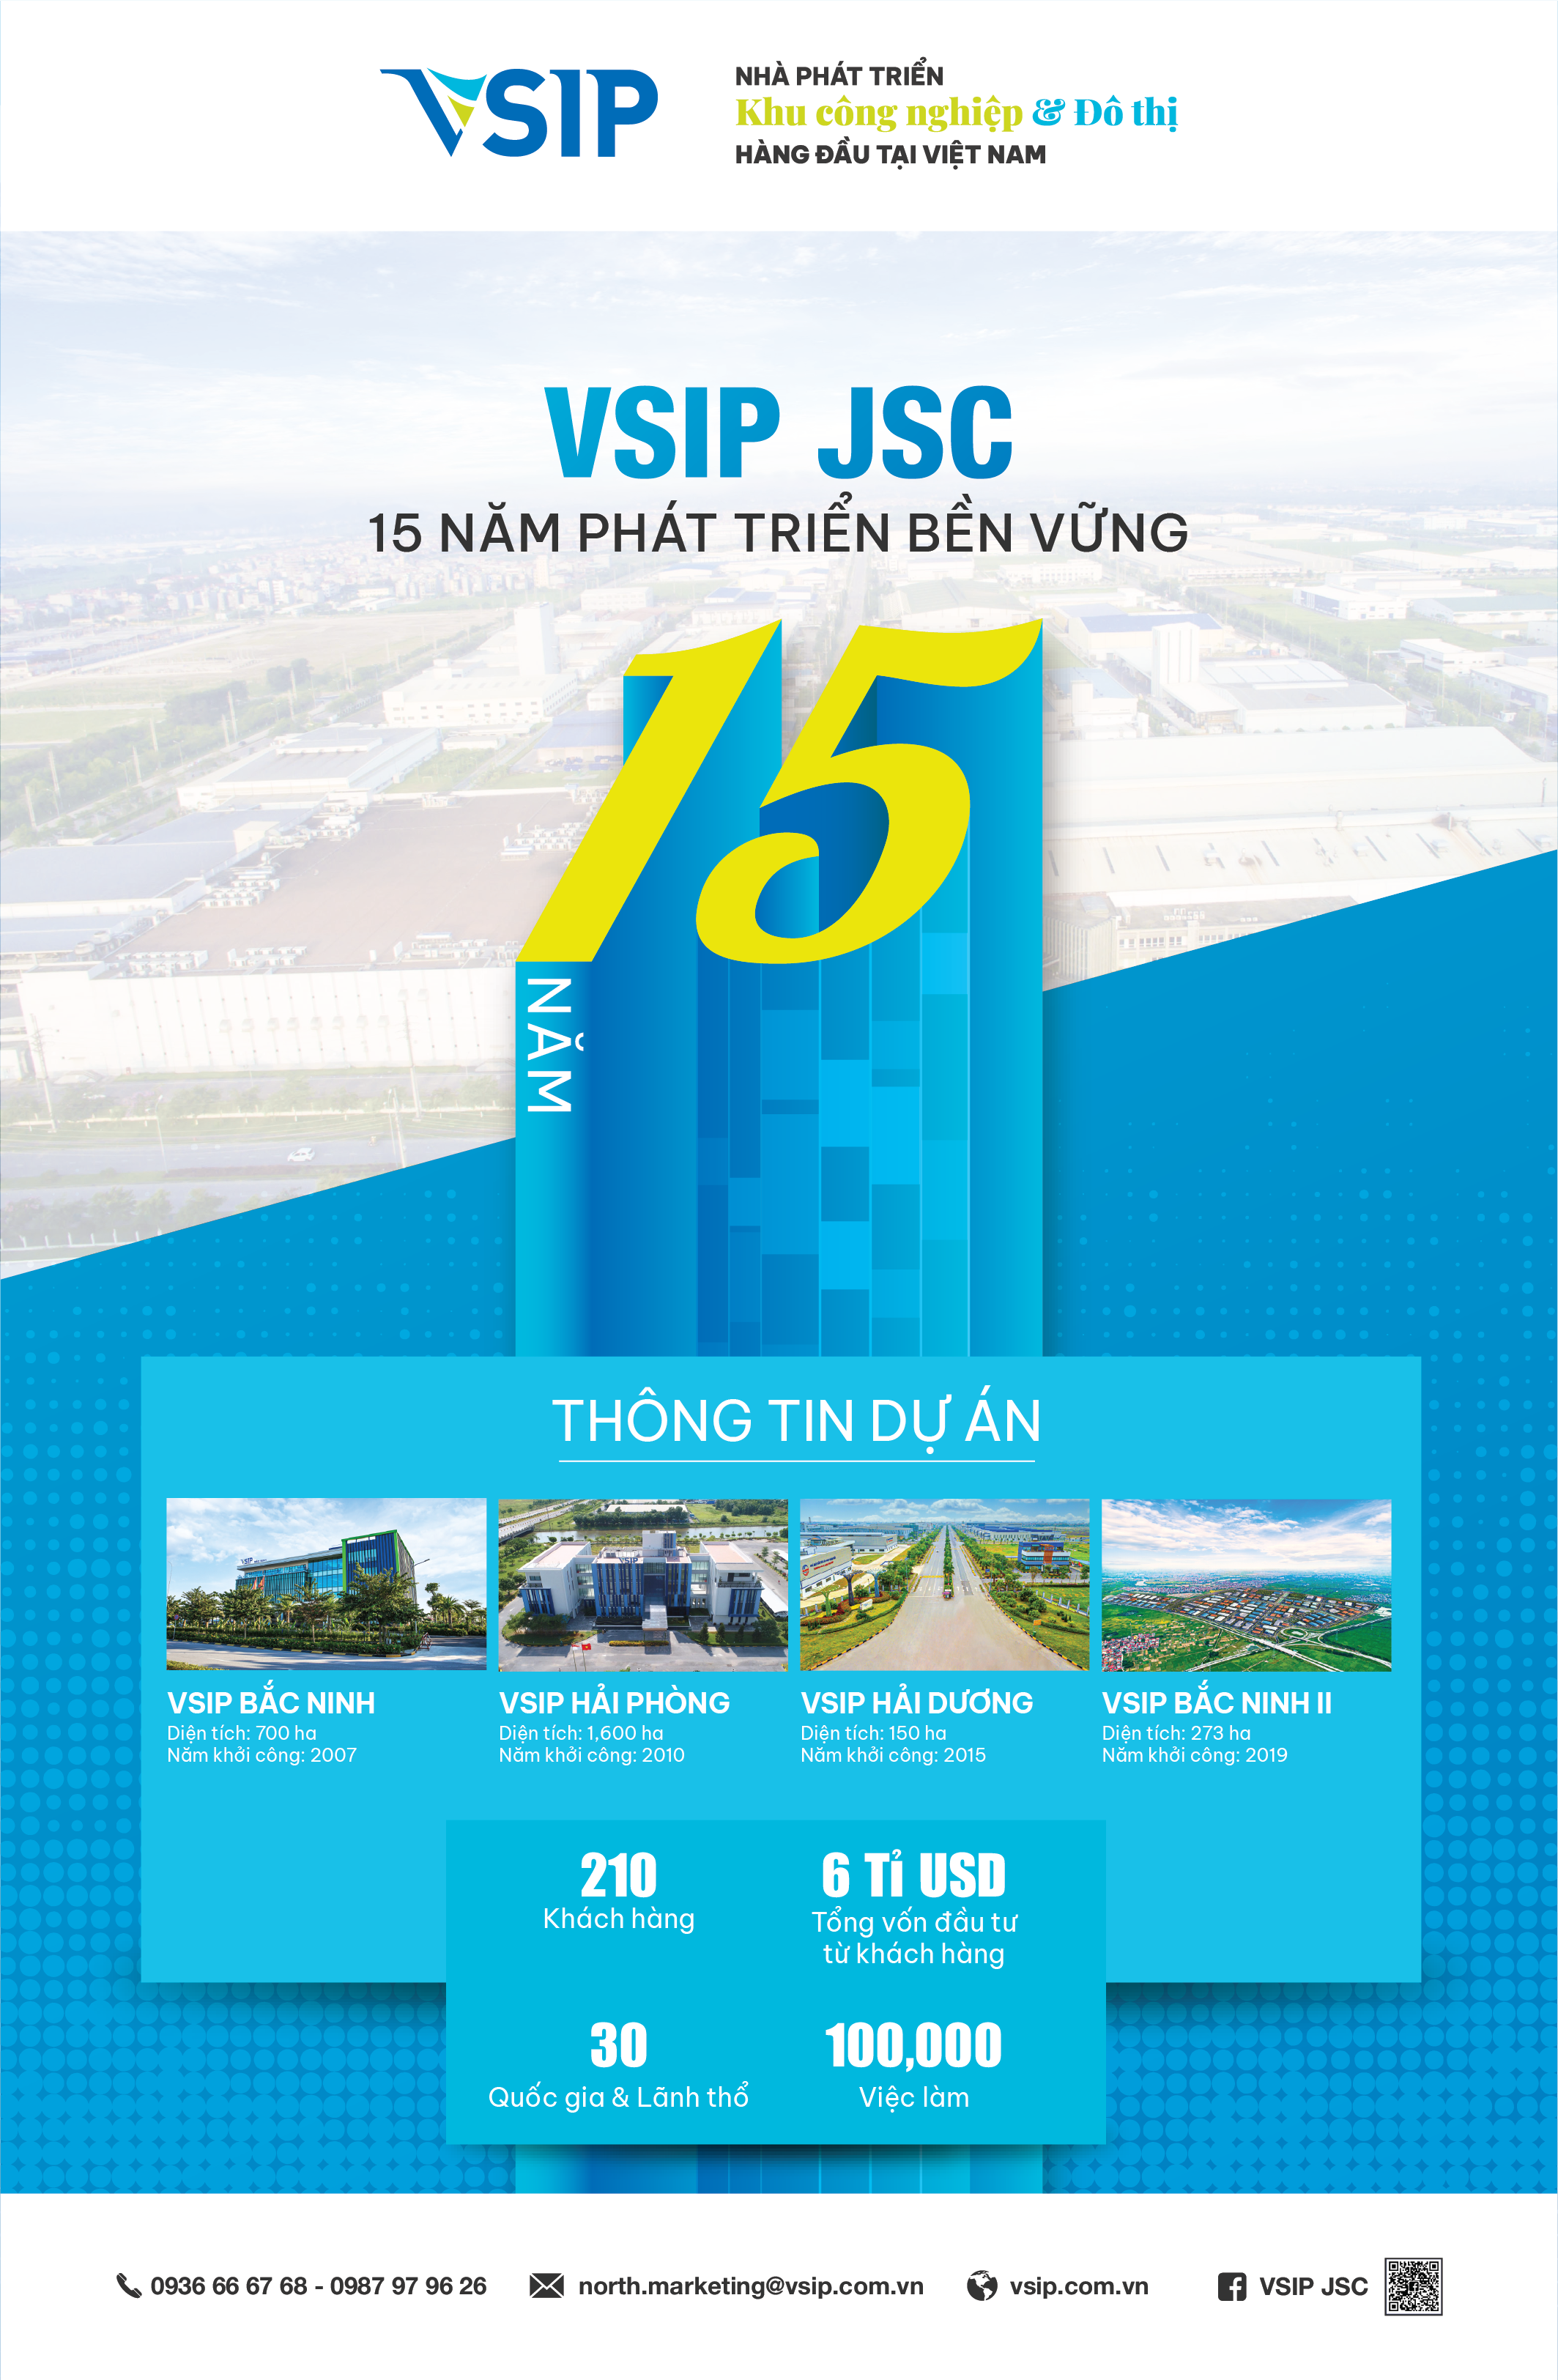 VSIP JSC lọt Top 10 doanh nghiệp FDI phát triển bền vững hàng đầu Việt Nam năm 2022 - Ảnh 1